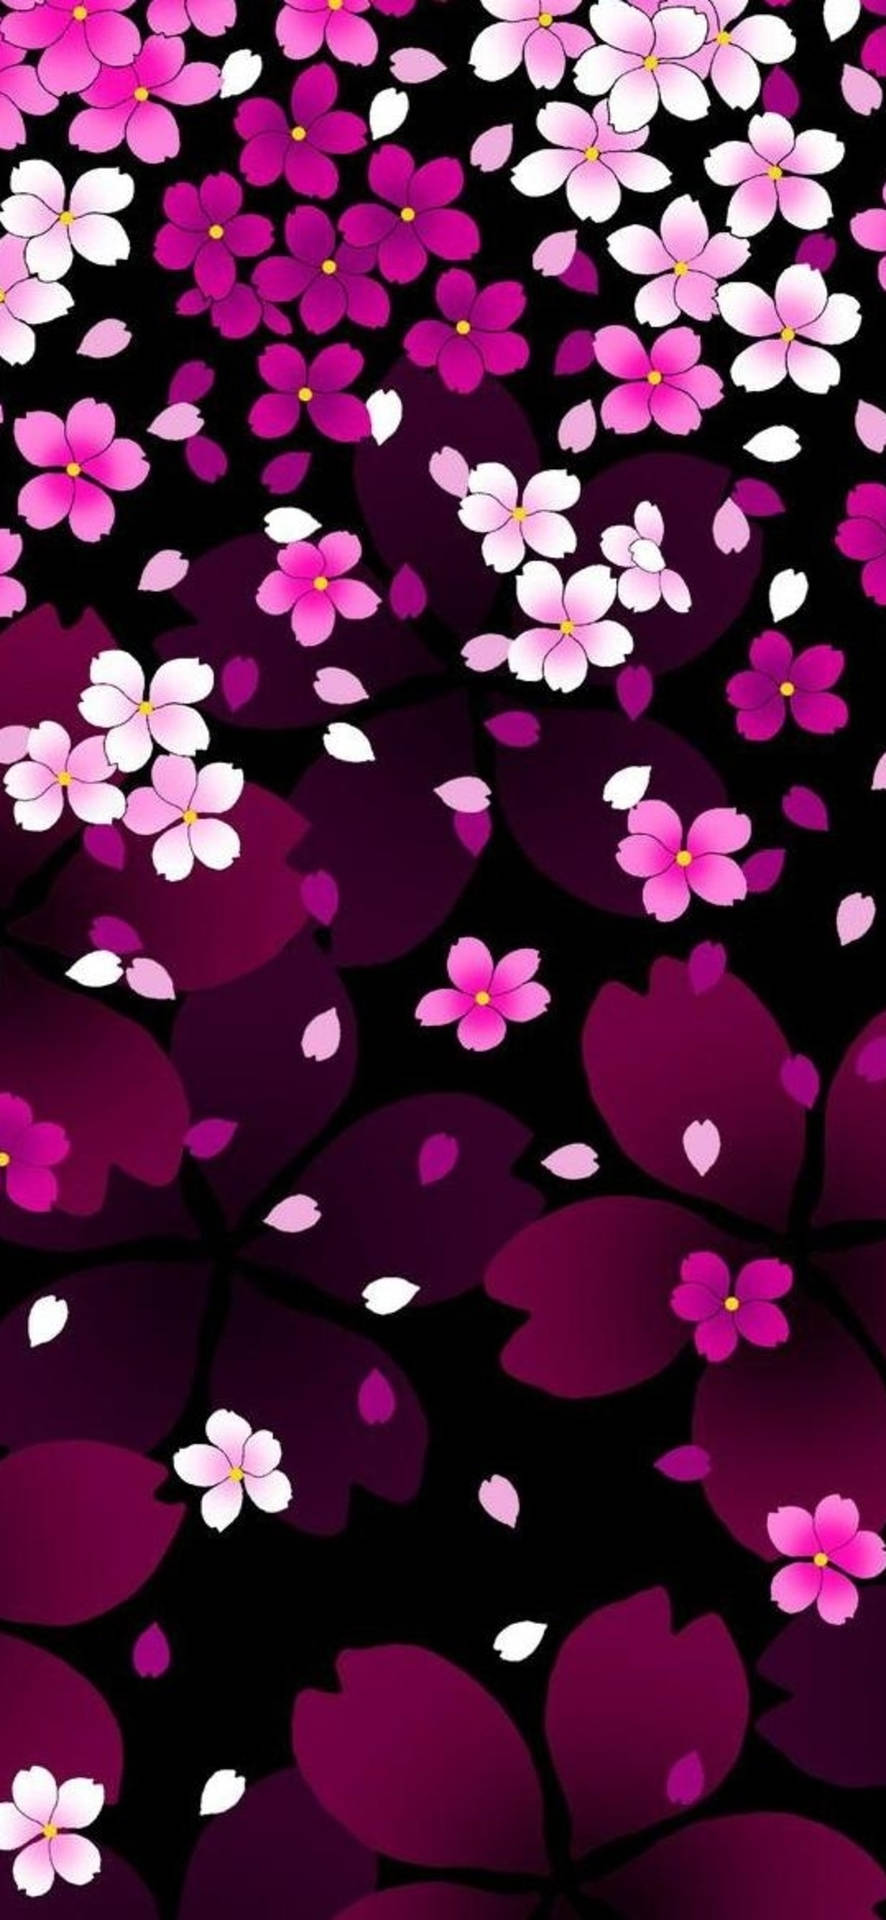 Fondode Pantalla De Flores En Tonos Rosa Claro Y Rosa Oscuro Para Teléfono Móvil. Fondo de pantalla